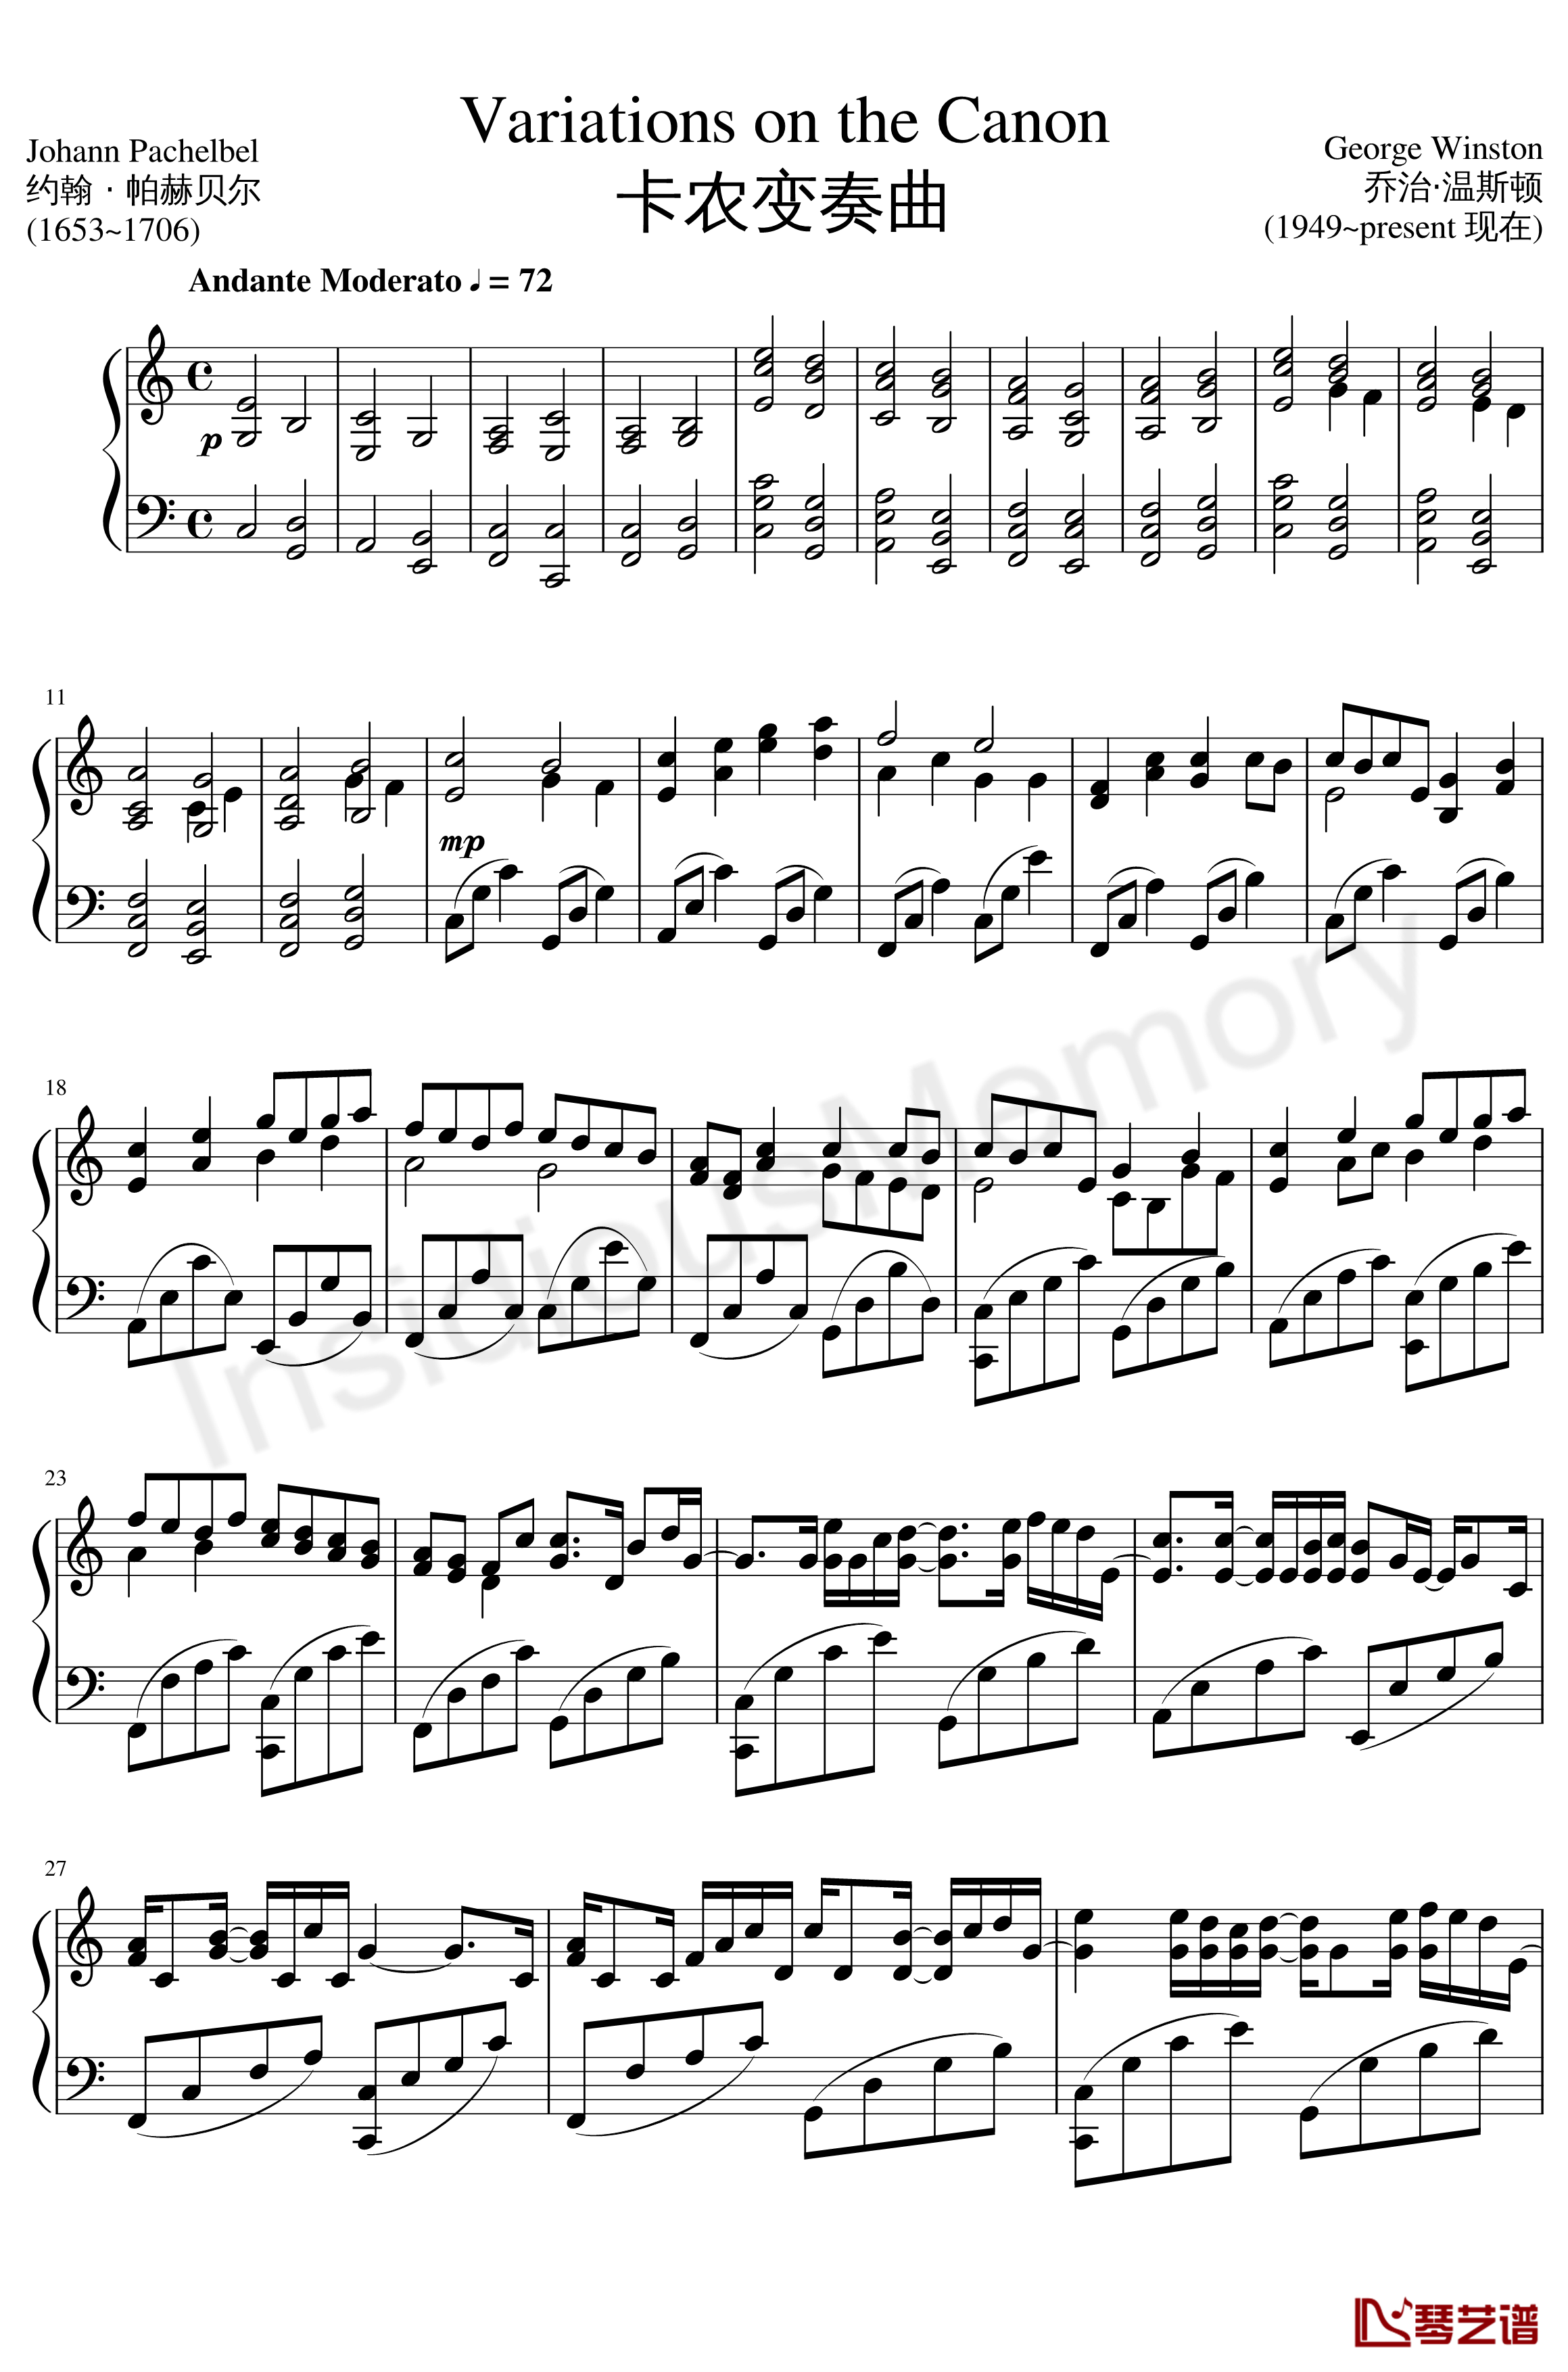 卡农变奏曲钢琴谱-Variations on the Canon-帕赫贝尔-Pachelbel1